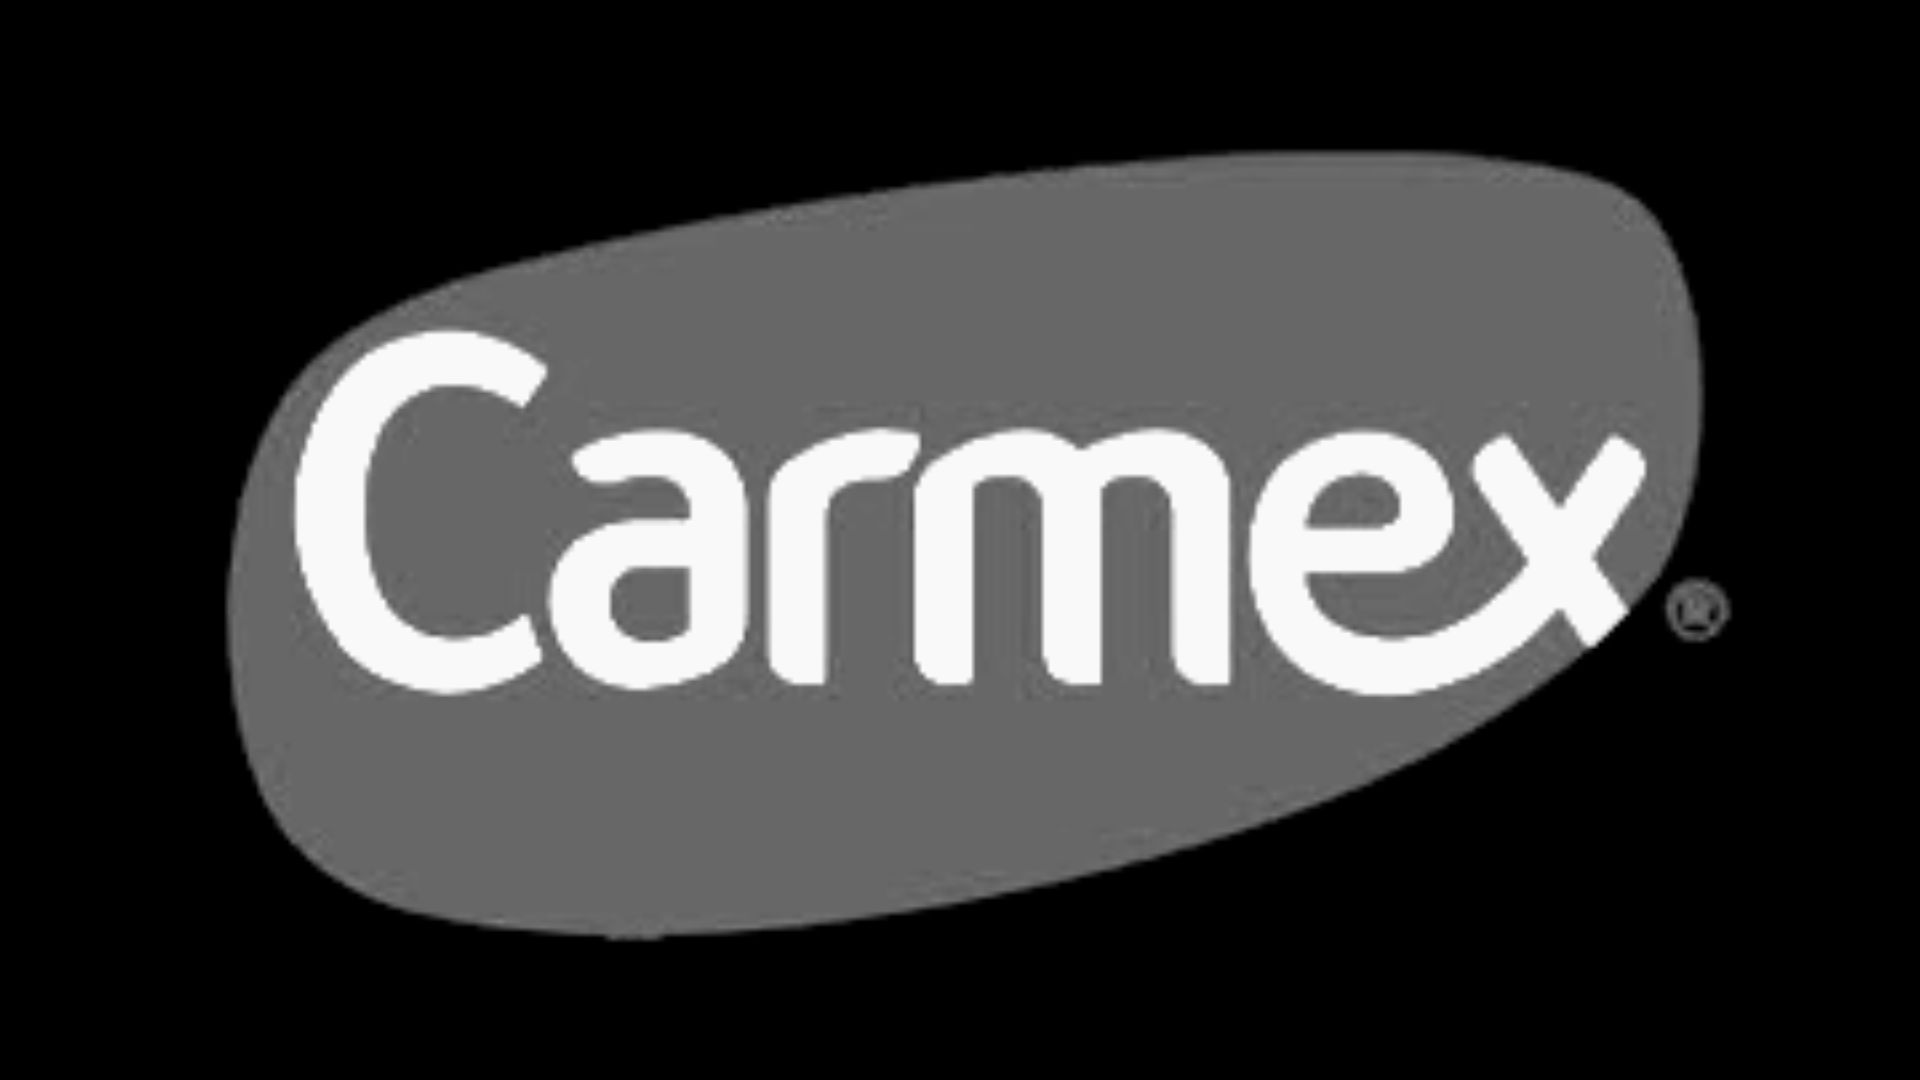 carmex logga